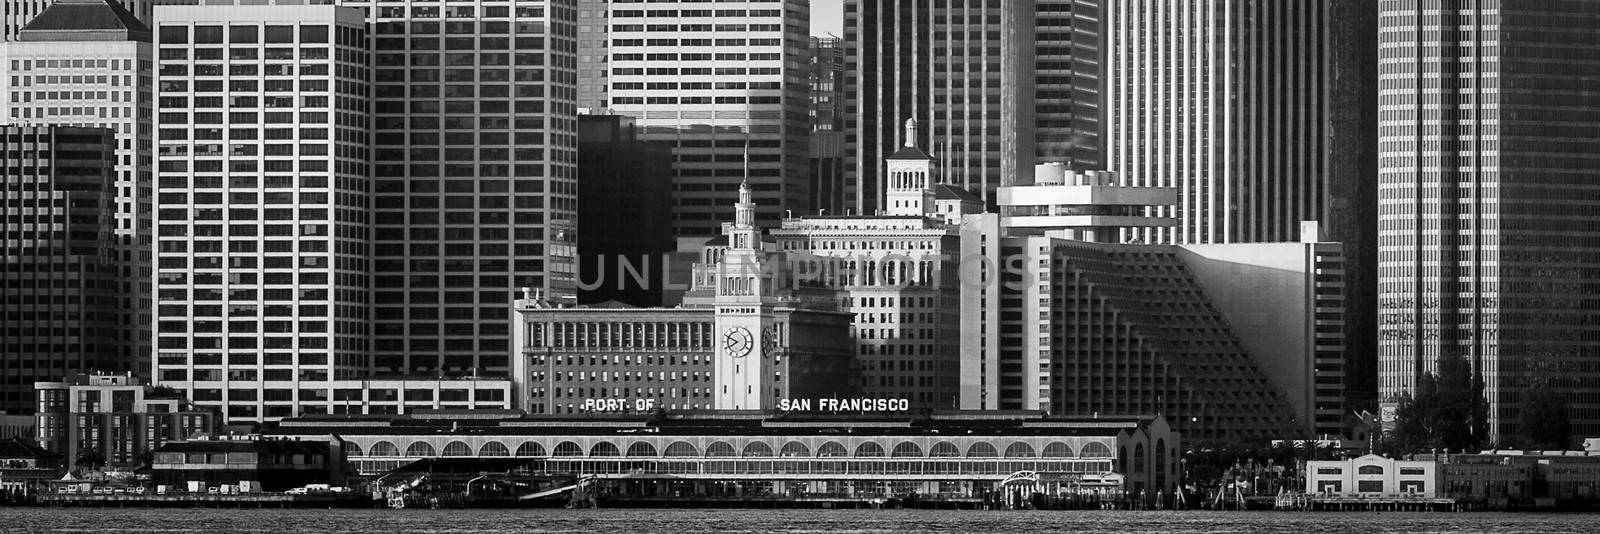 San Francisco buildings, San Francisco, California, USA